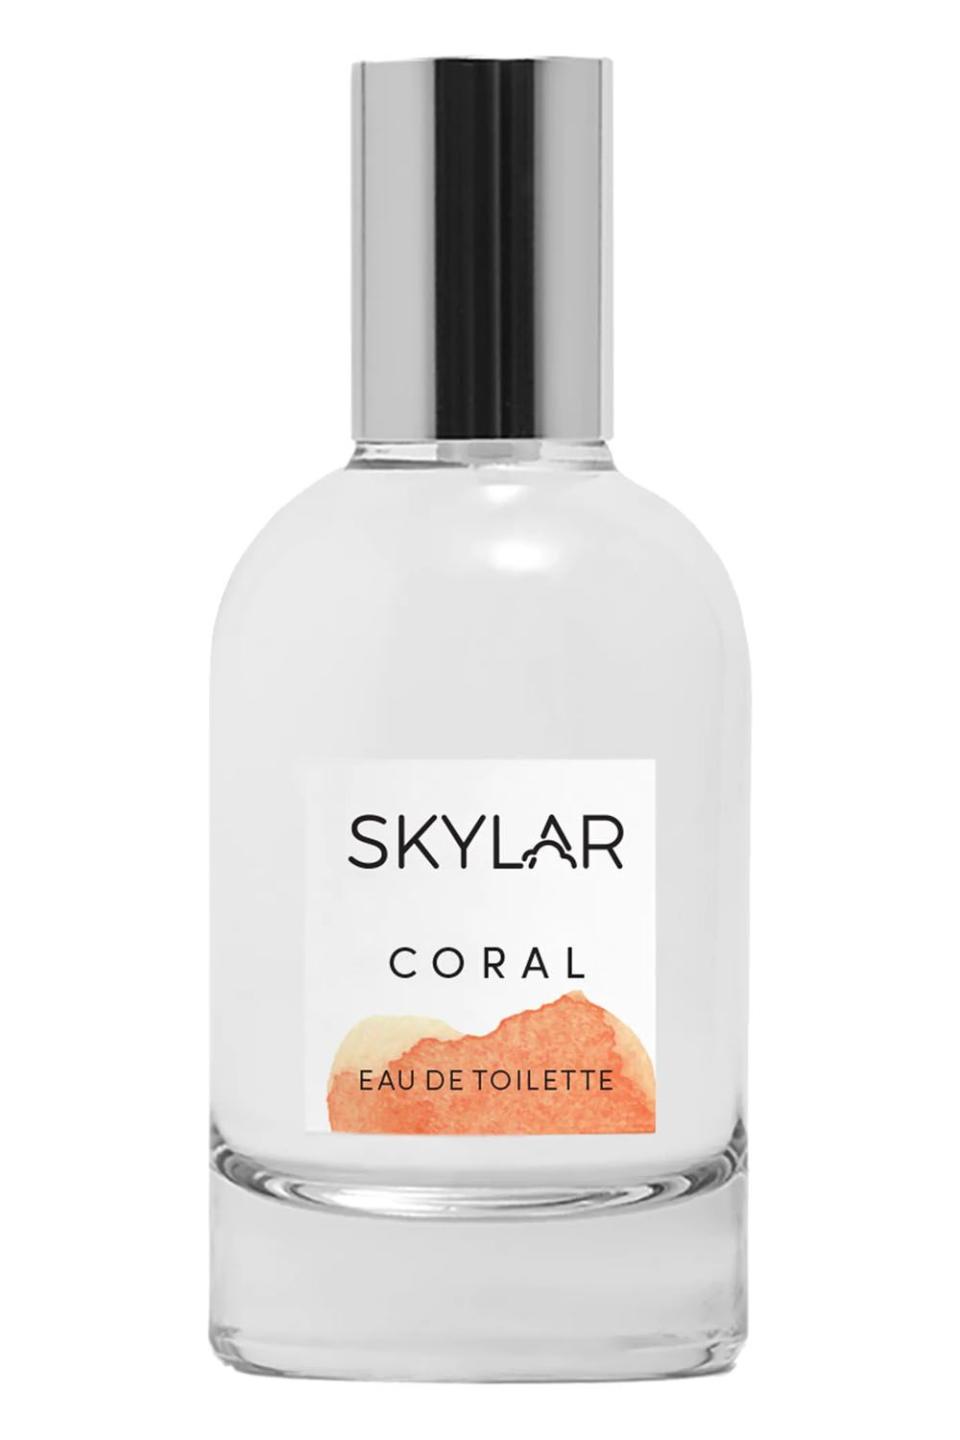 7) Skylar Eau De Toilette Coral